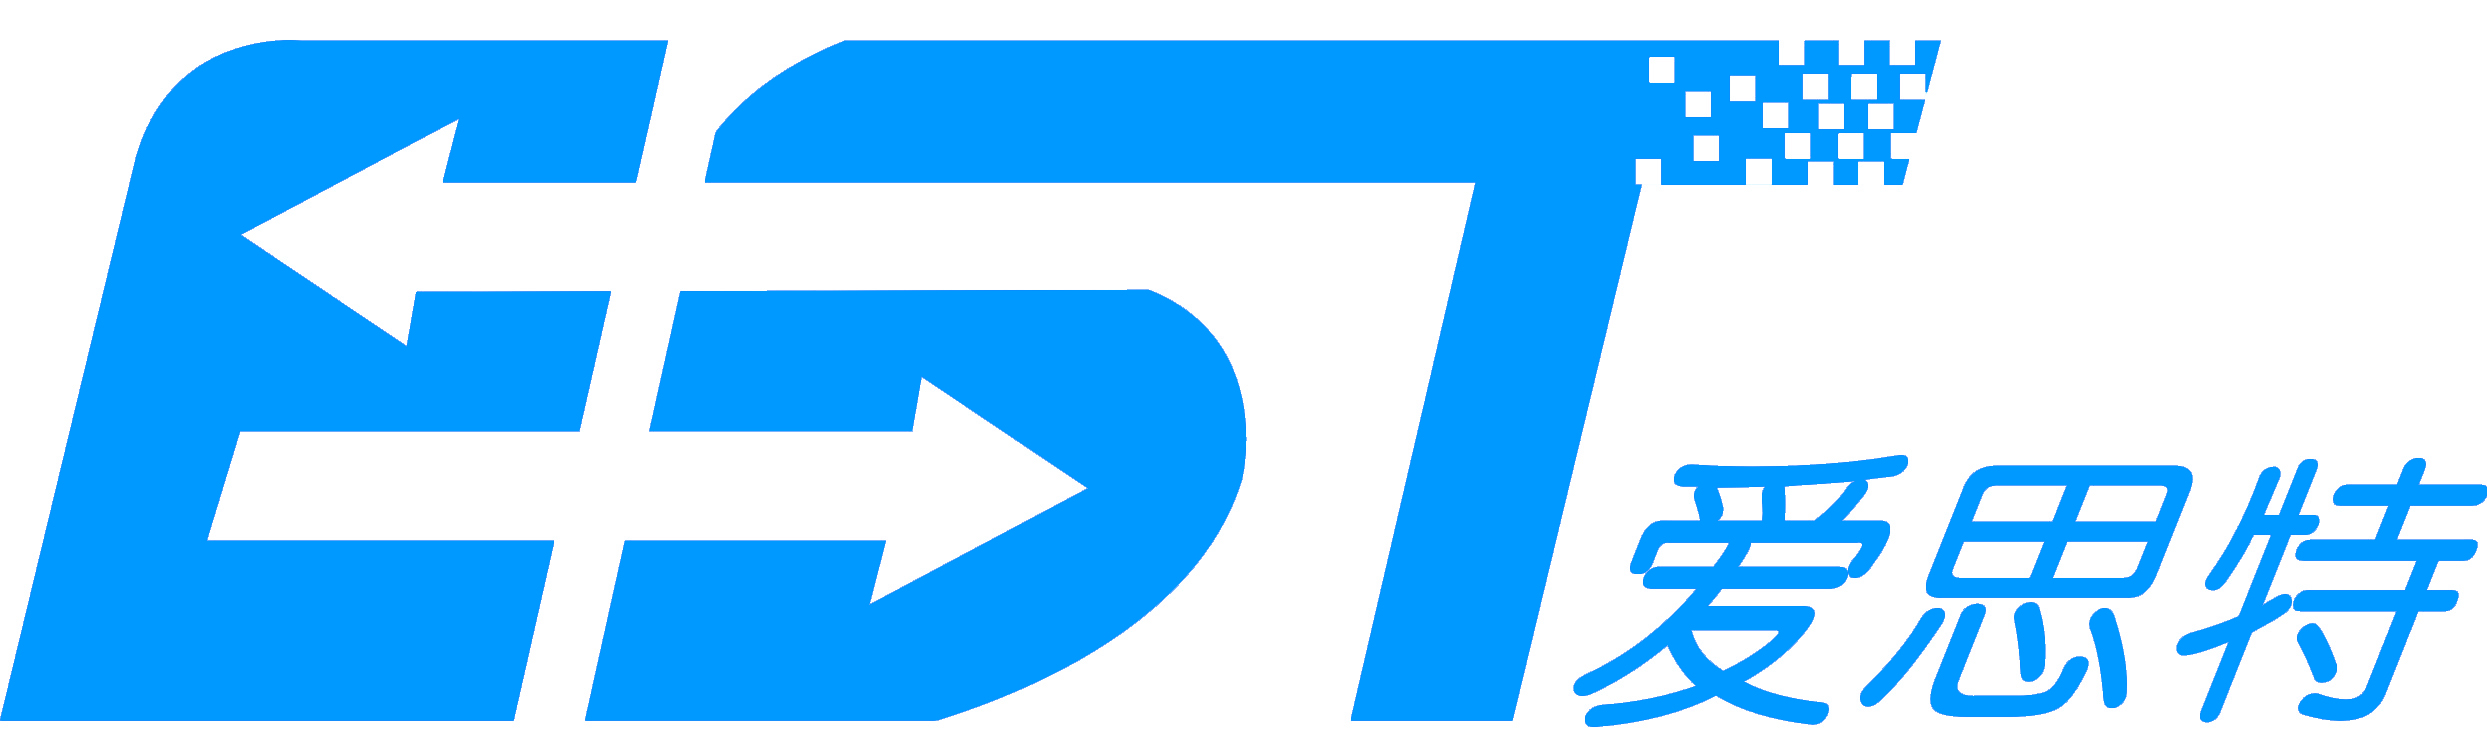 EST-logo